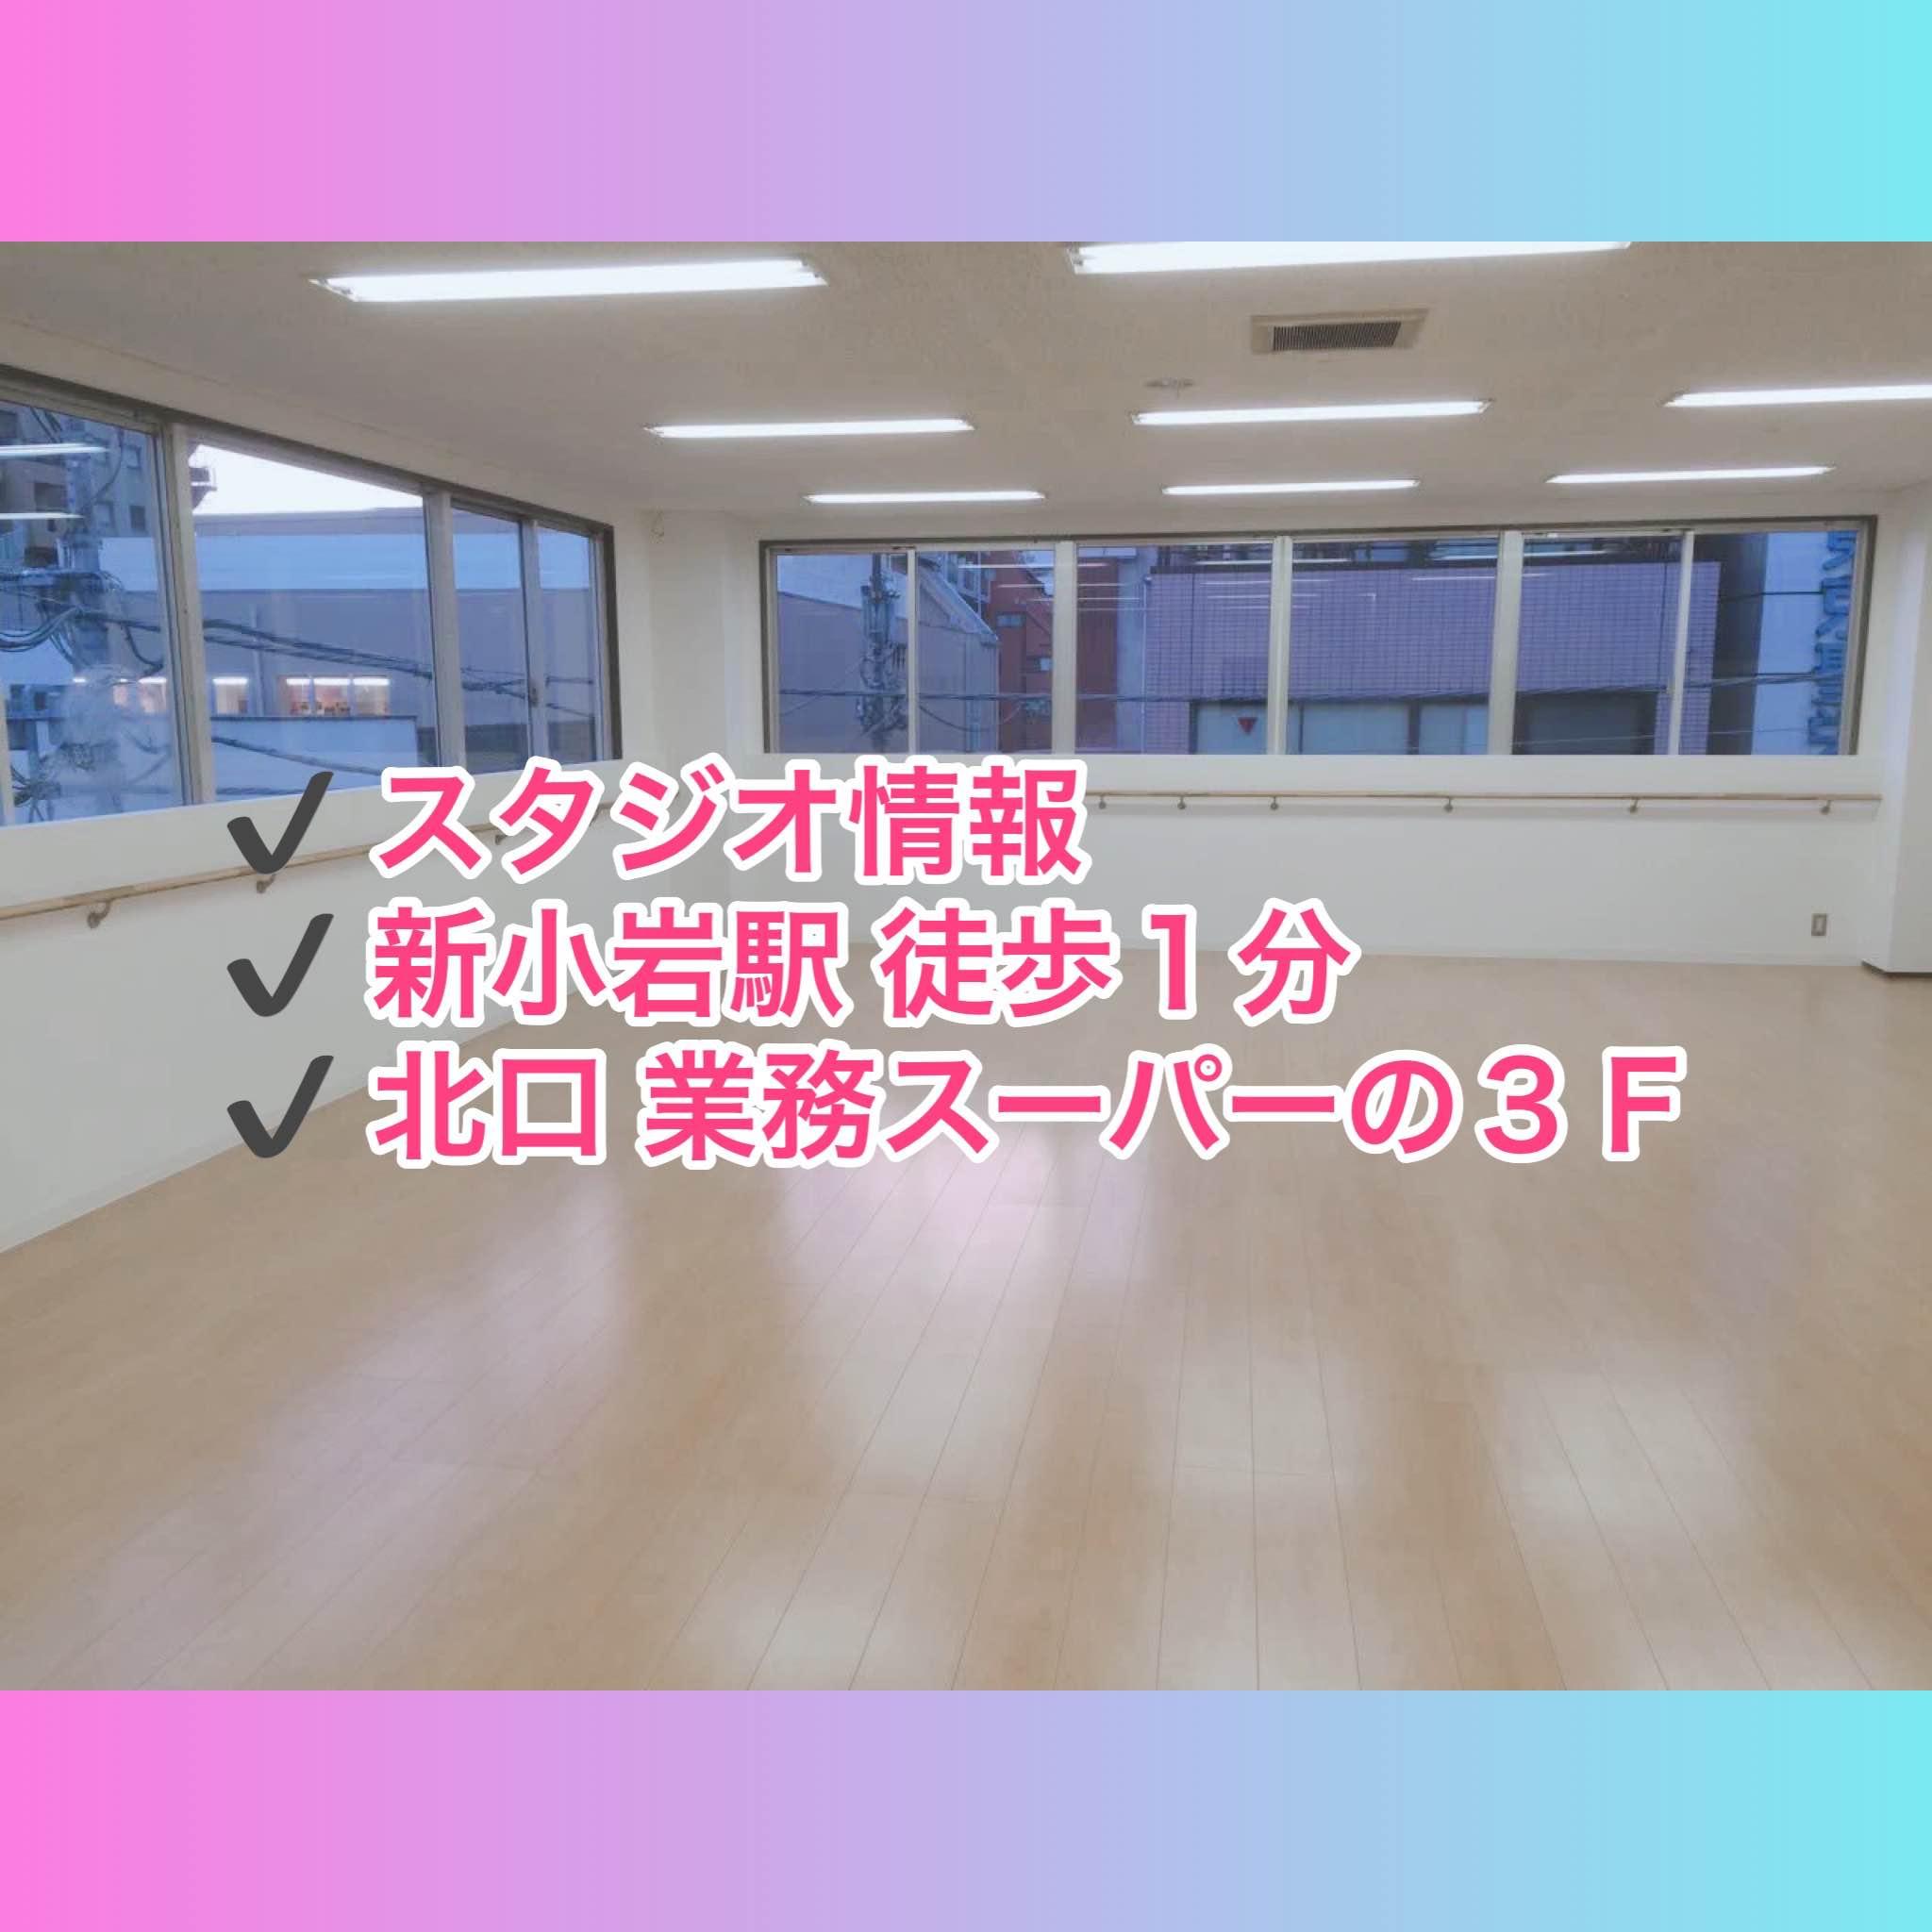 【チアダンス教室】723 step